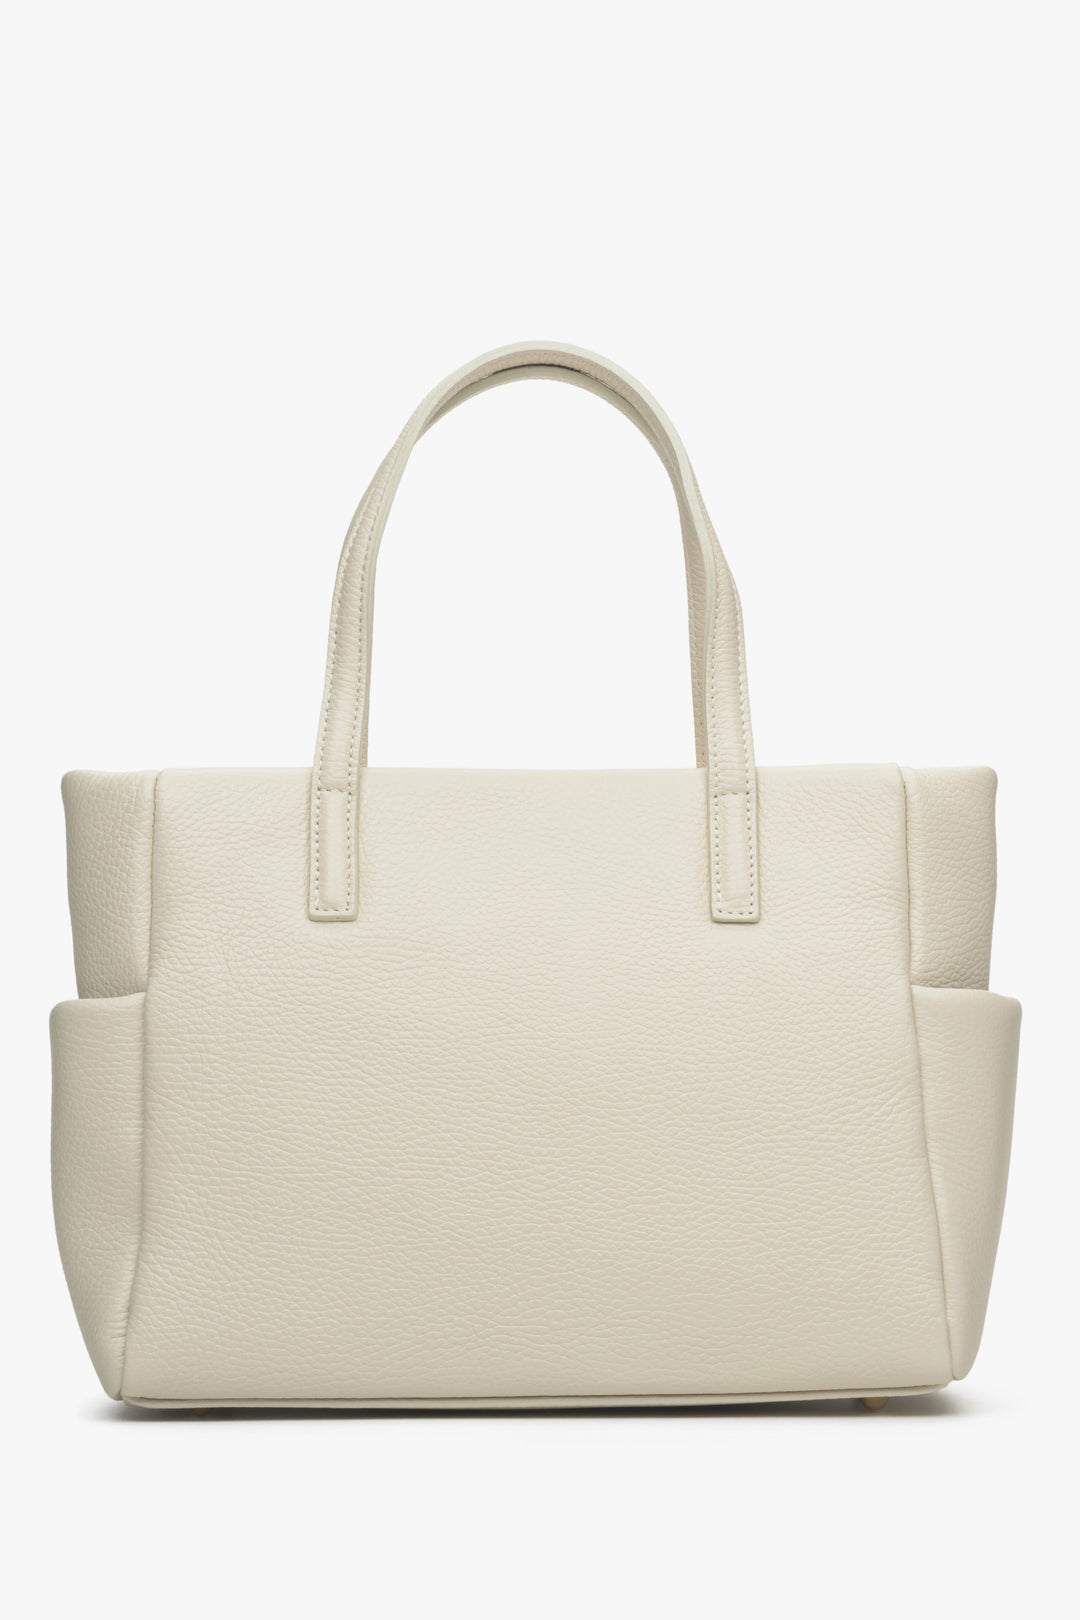 Women's light beige shopper bag by Estro.